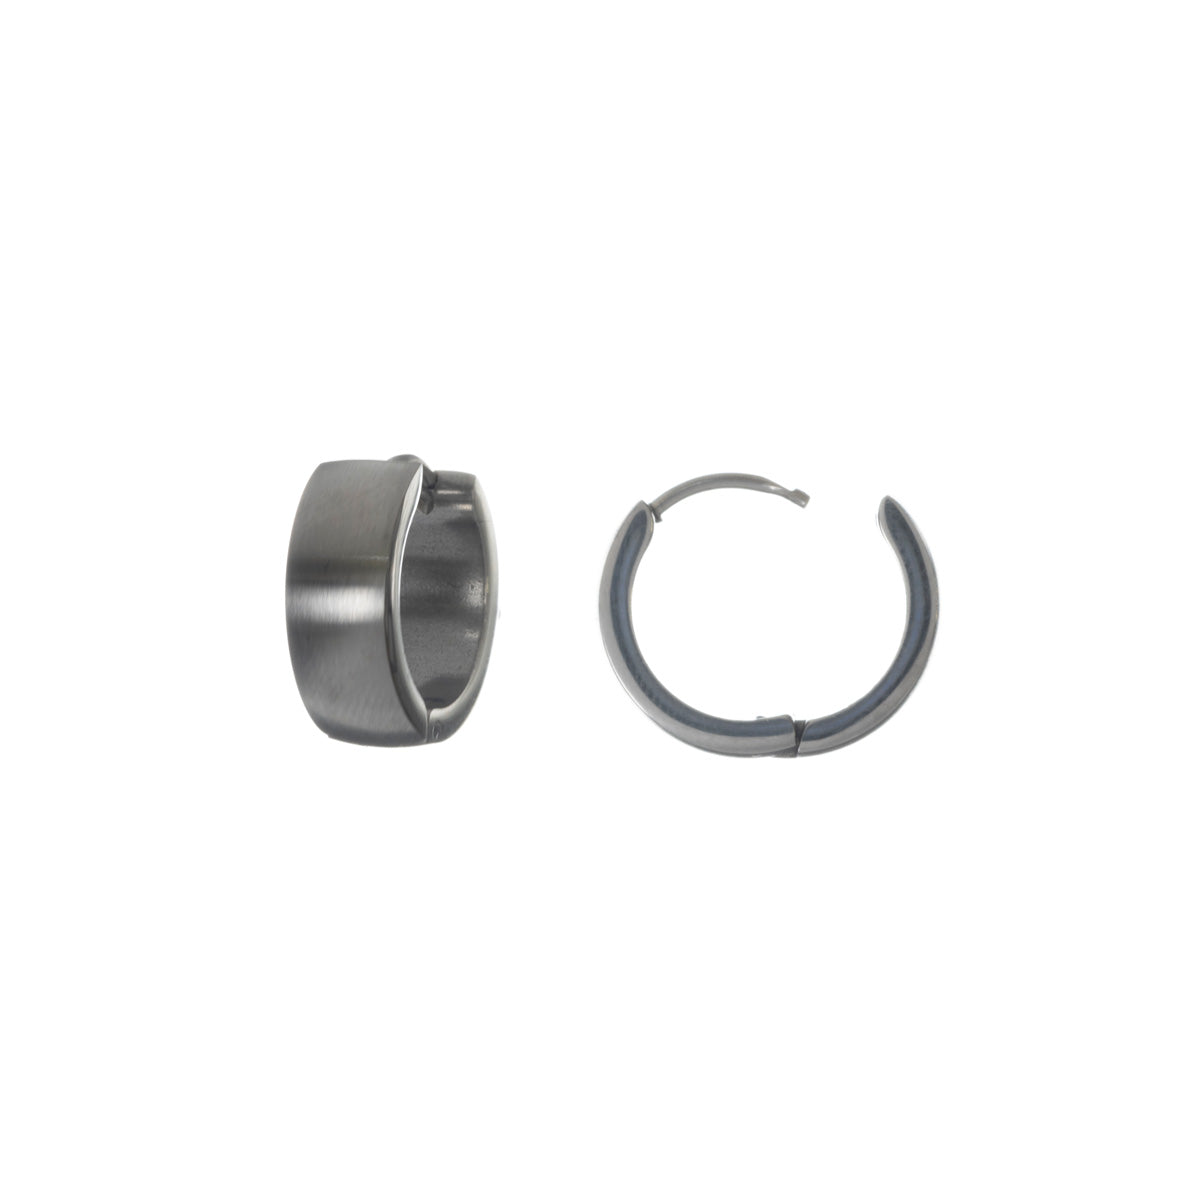 Wide brushed steel ring earrings 1,6cm